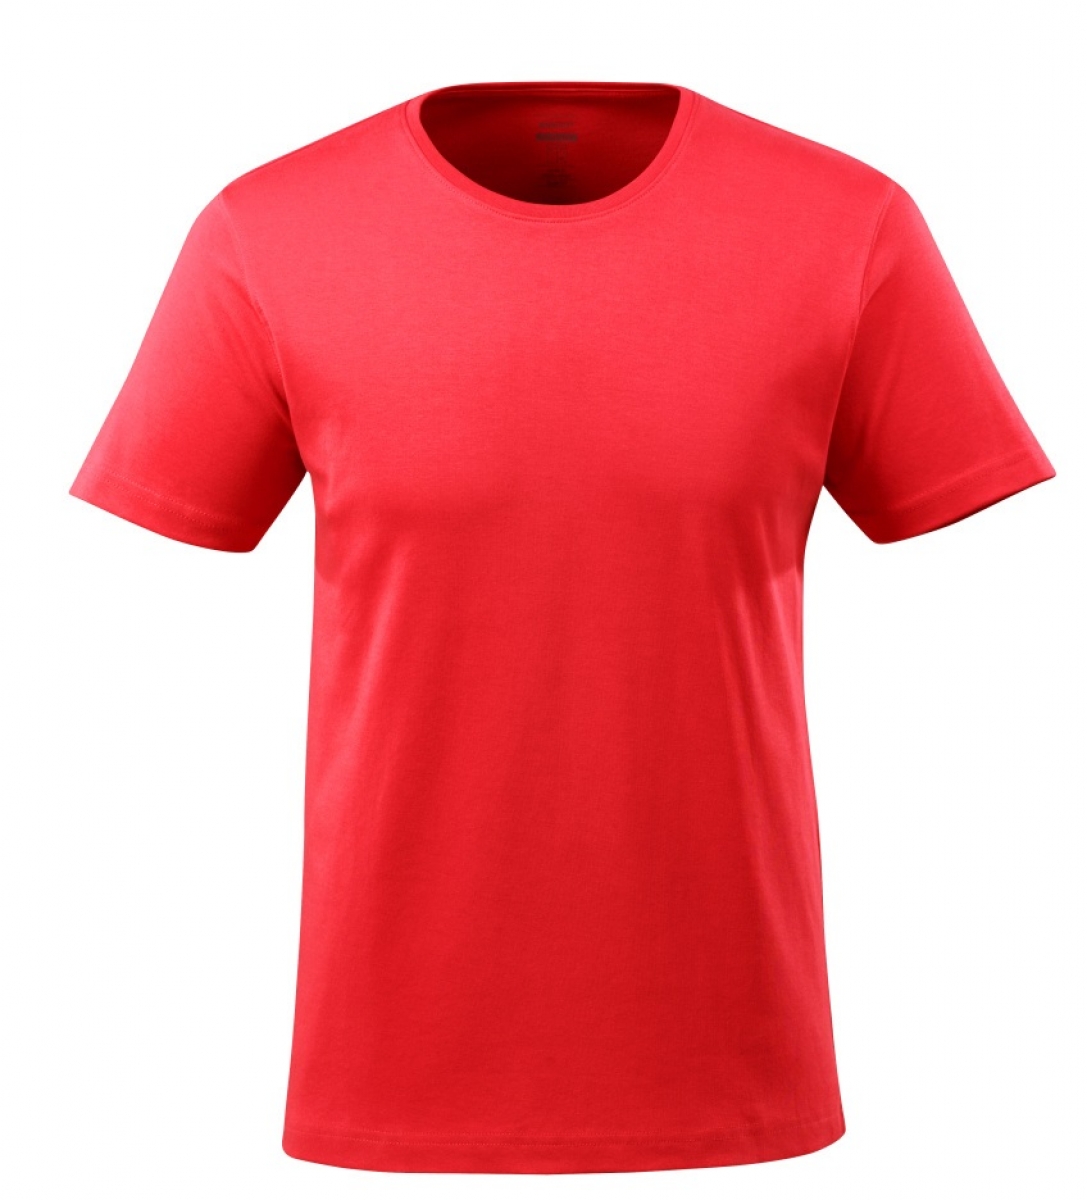 MASCOT-Worker-Shirts, T-Shirt, Vence, 220 g/m, verkehrsrot